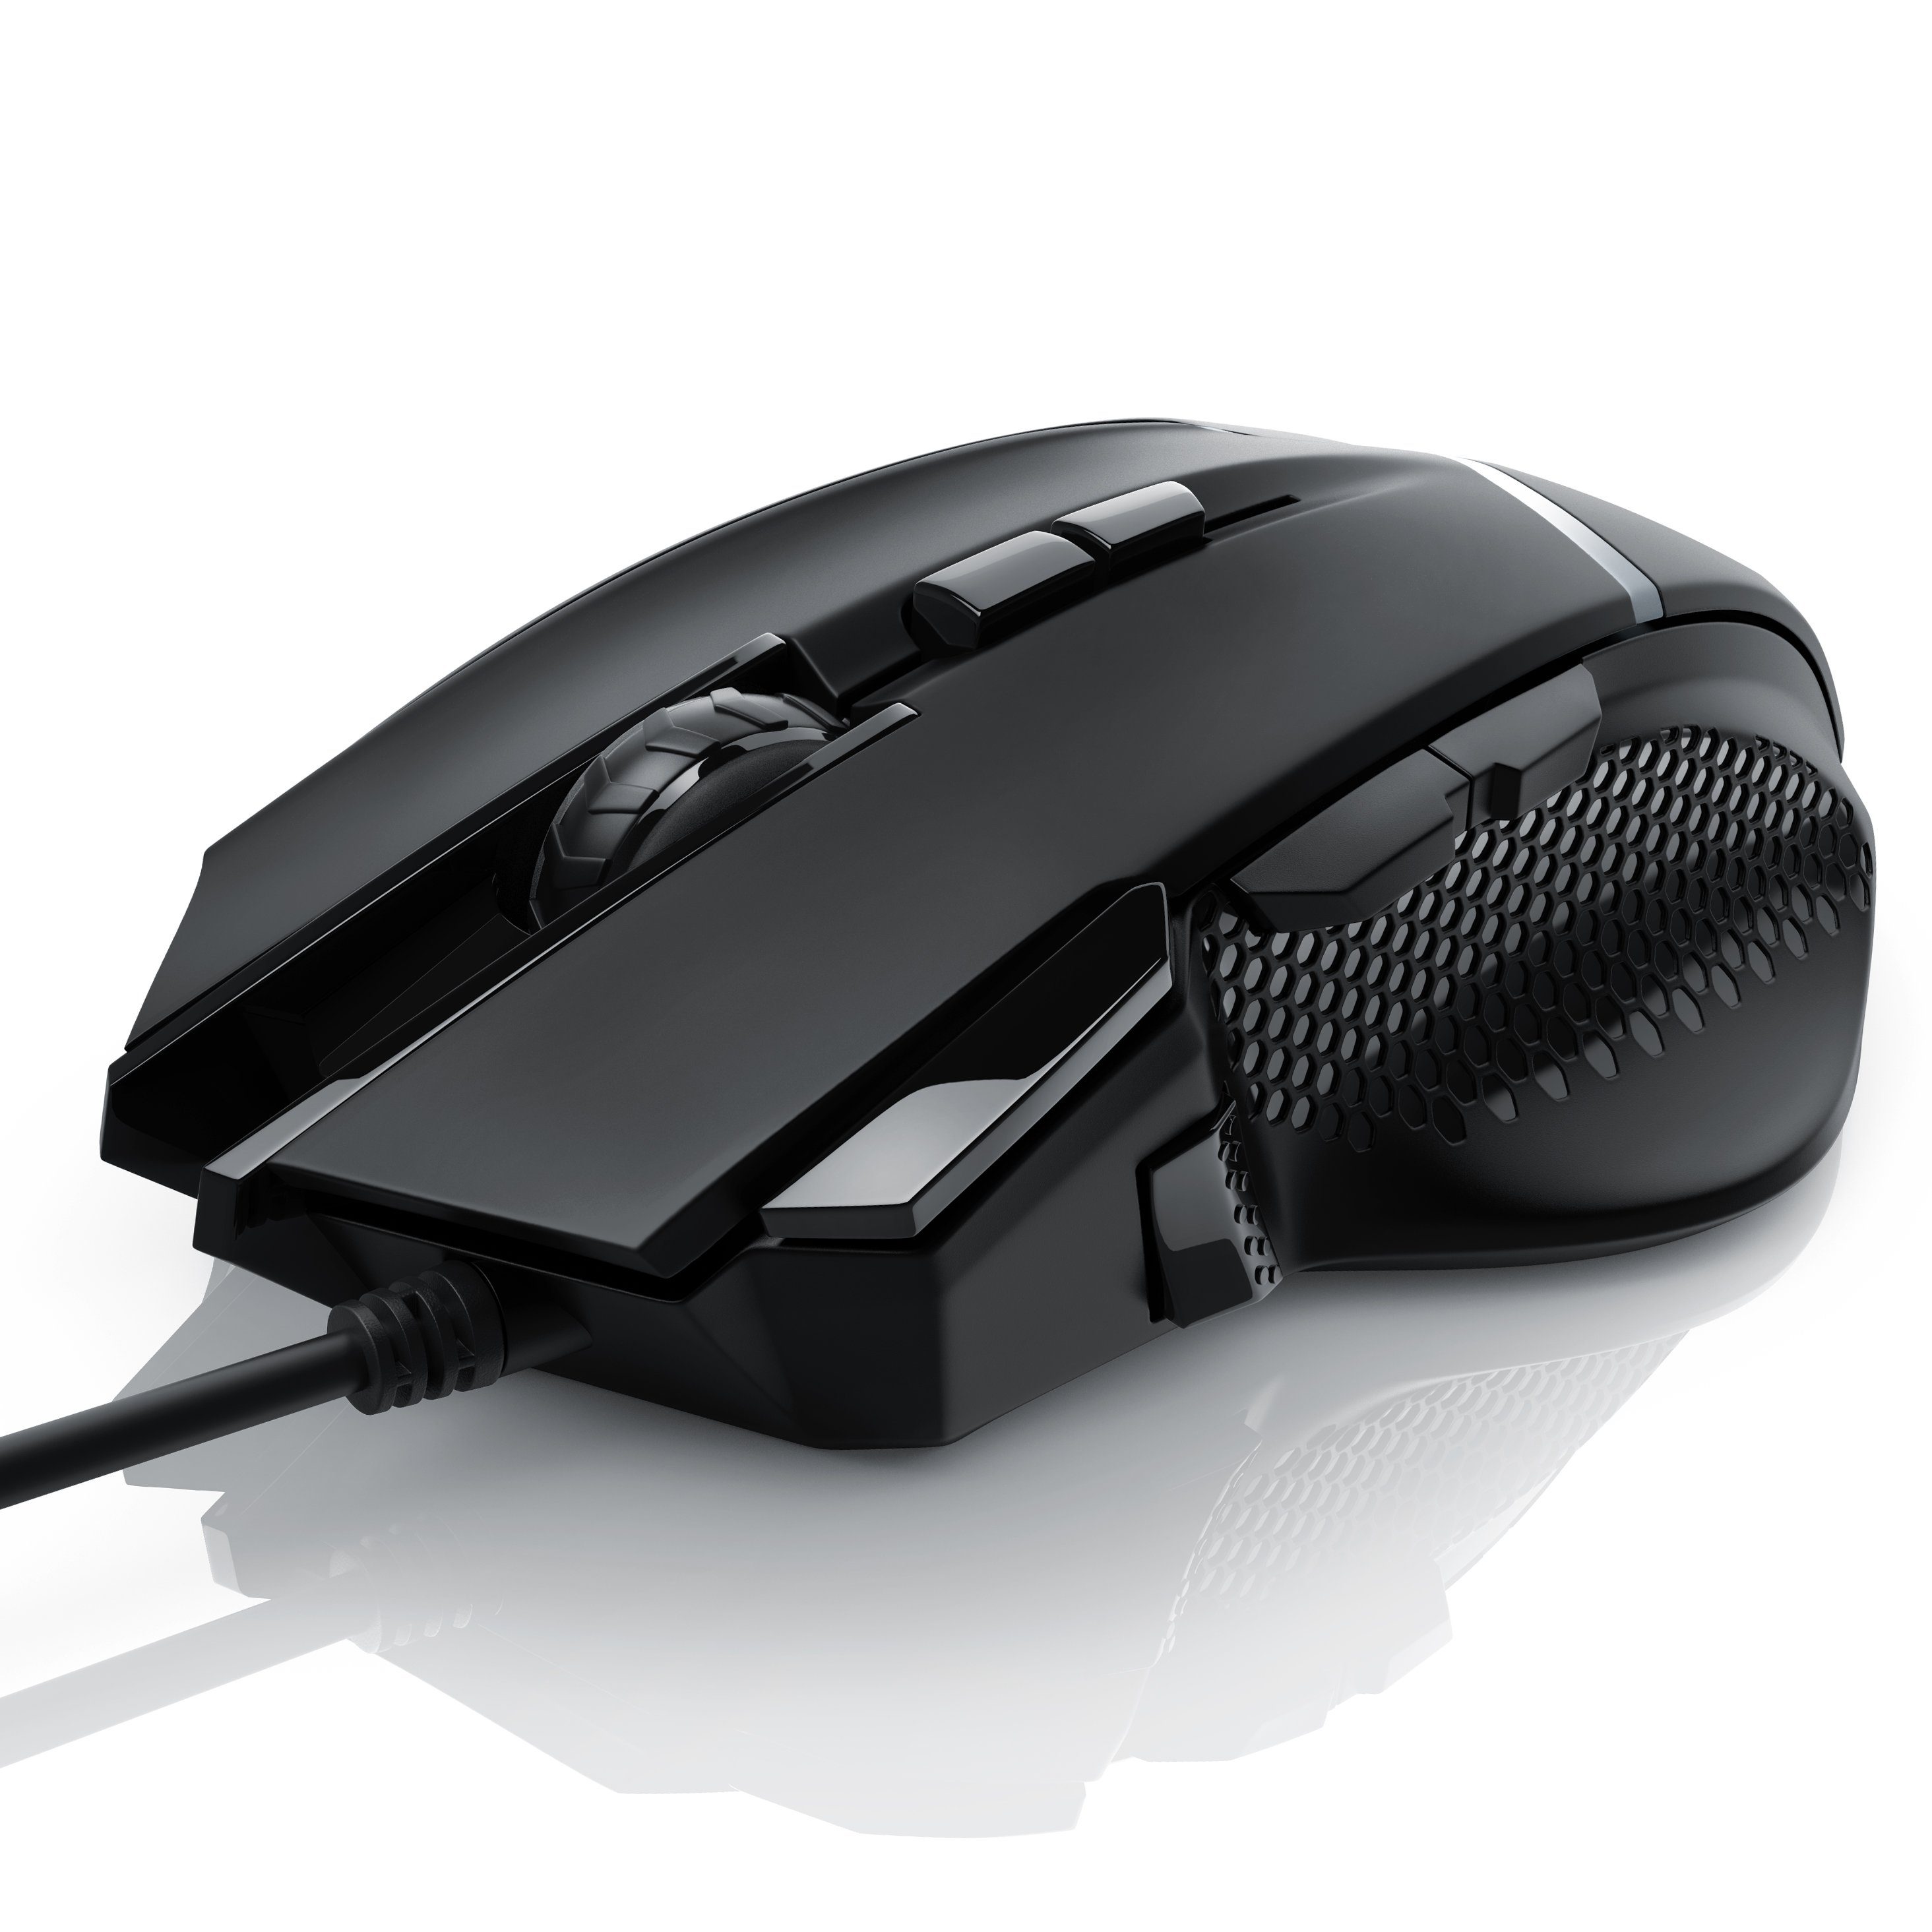 CSL Gaming-Maus (kabelgebunden, 500 dpi, Mouse dpi, wählbar, ergonomisch, Gewichten) Abtastrate 3200 inkl